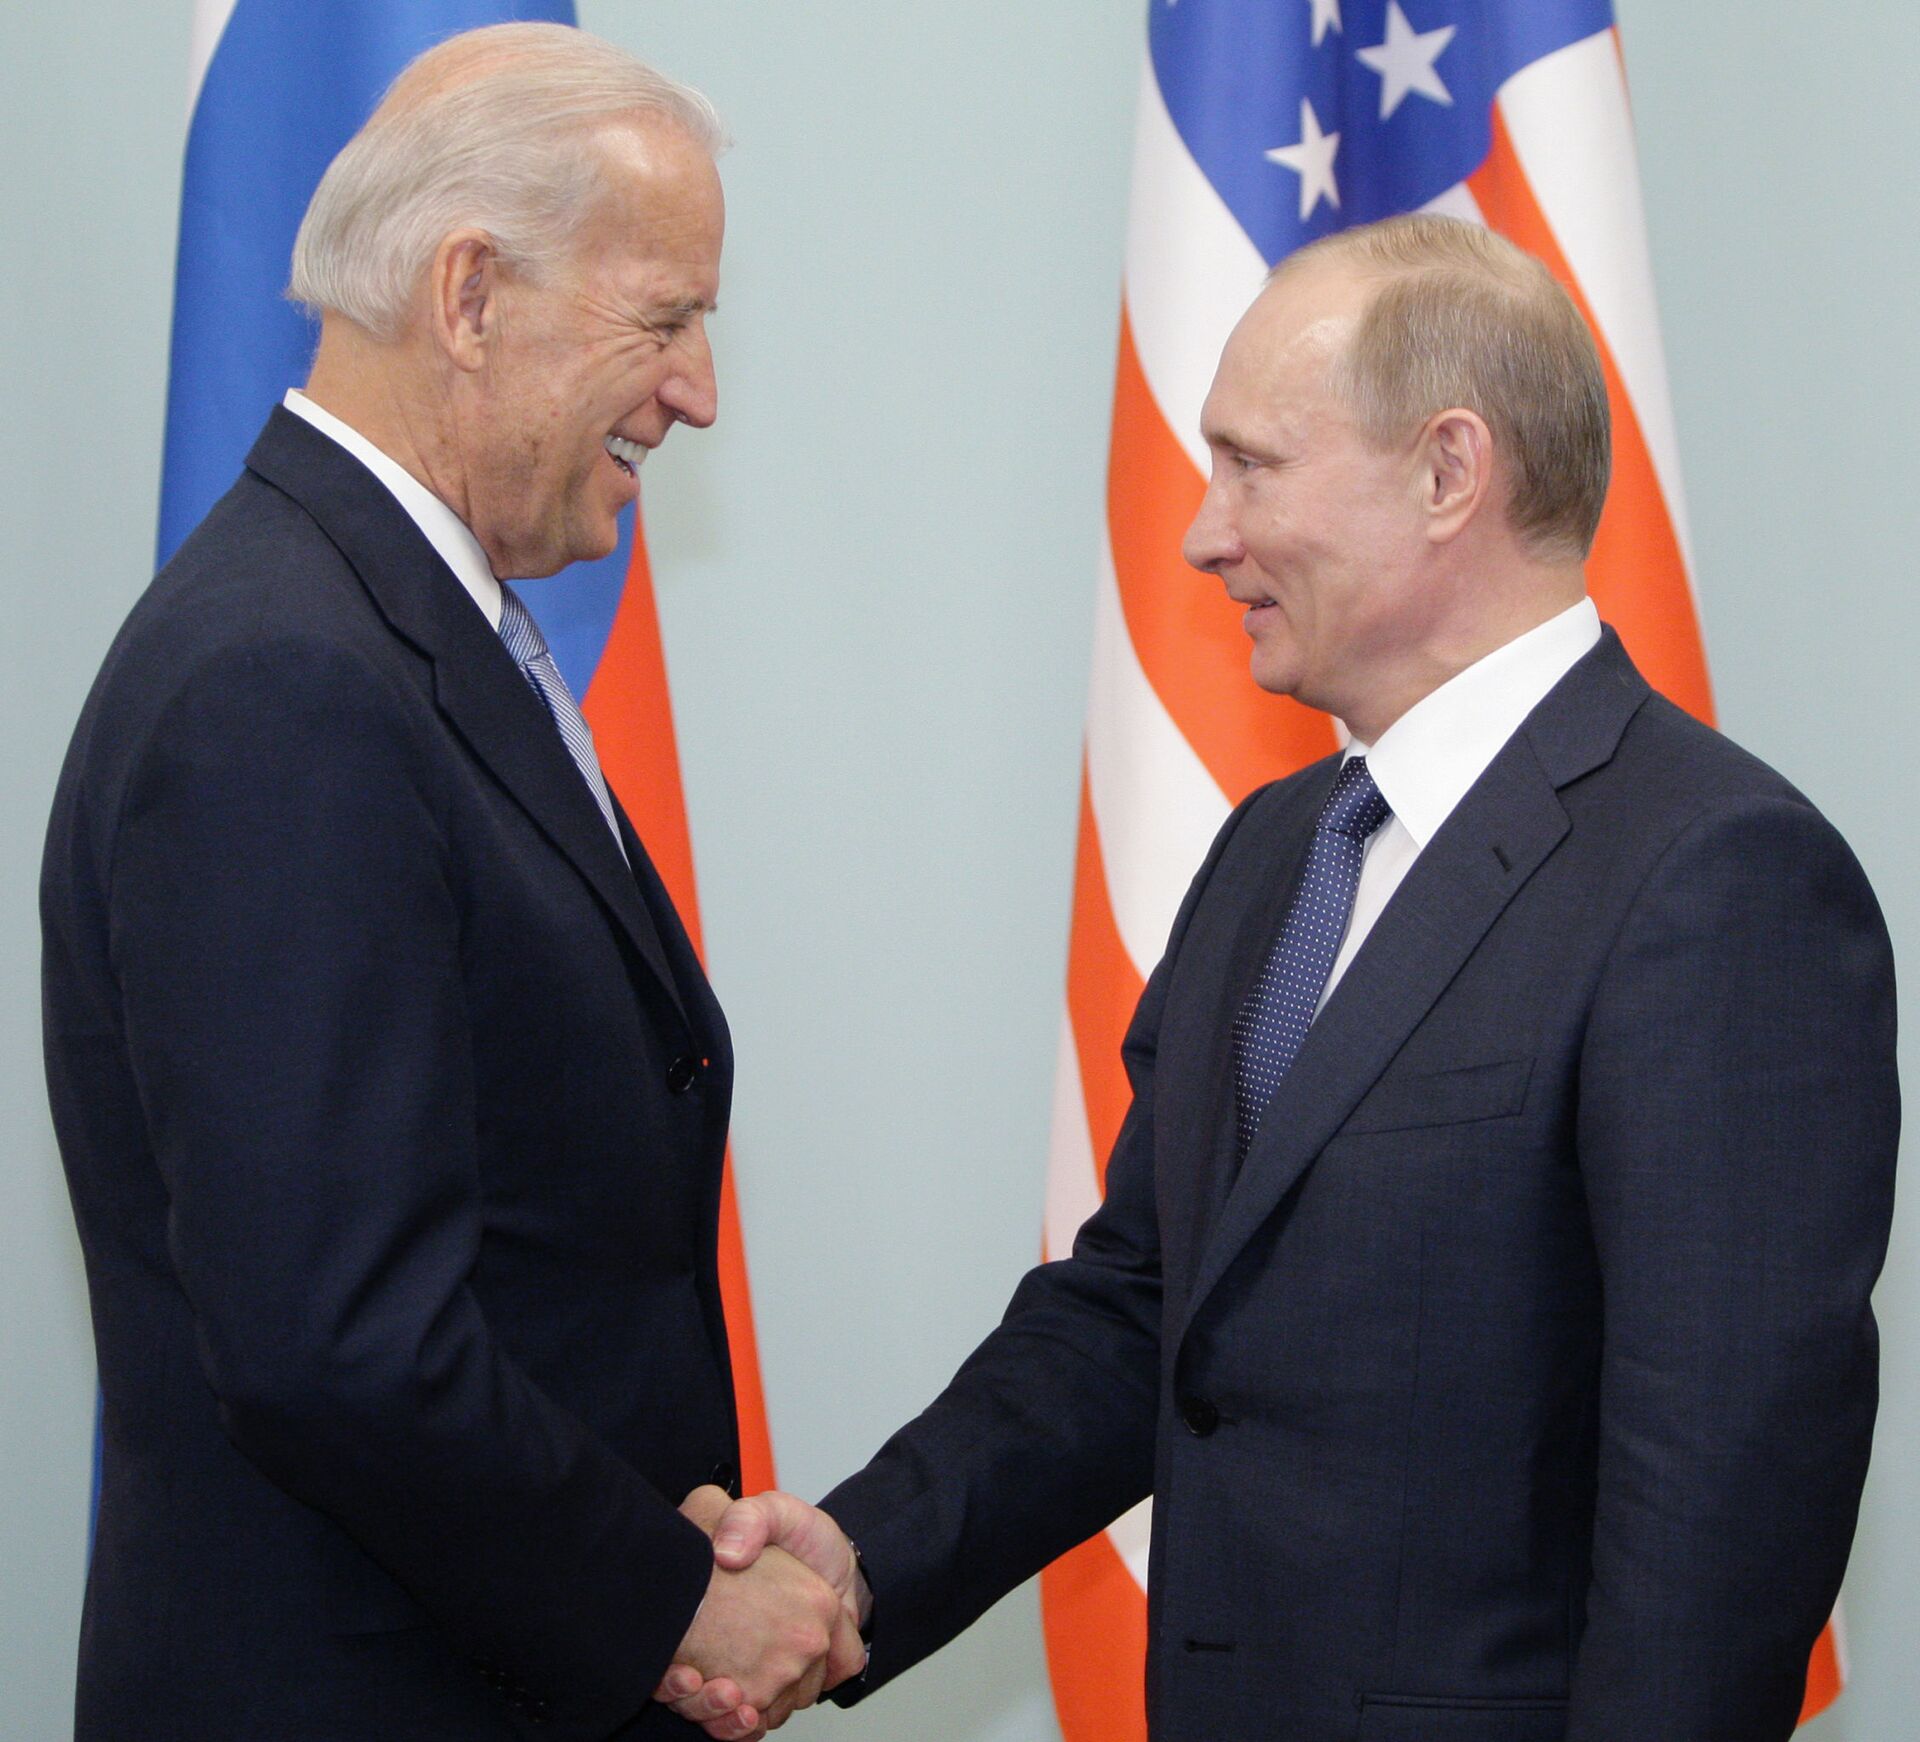 Biden acredita que Rússia e EUA podem ter uma relação estável e previsível, diz assessor - Sputnik Brasil, 1920, 15.04.2021